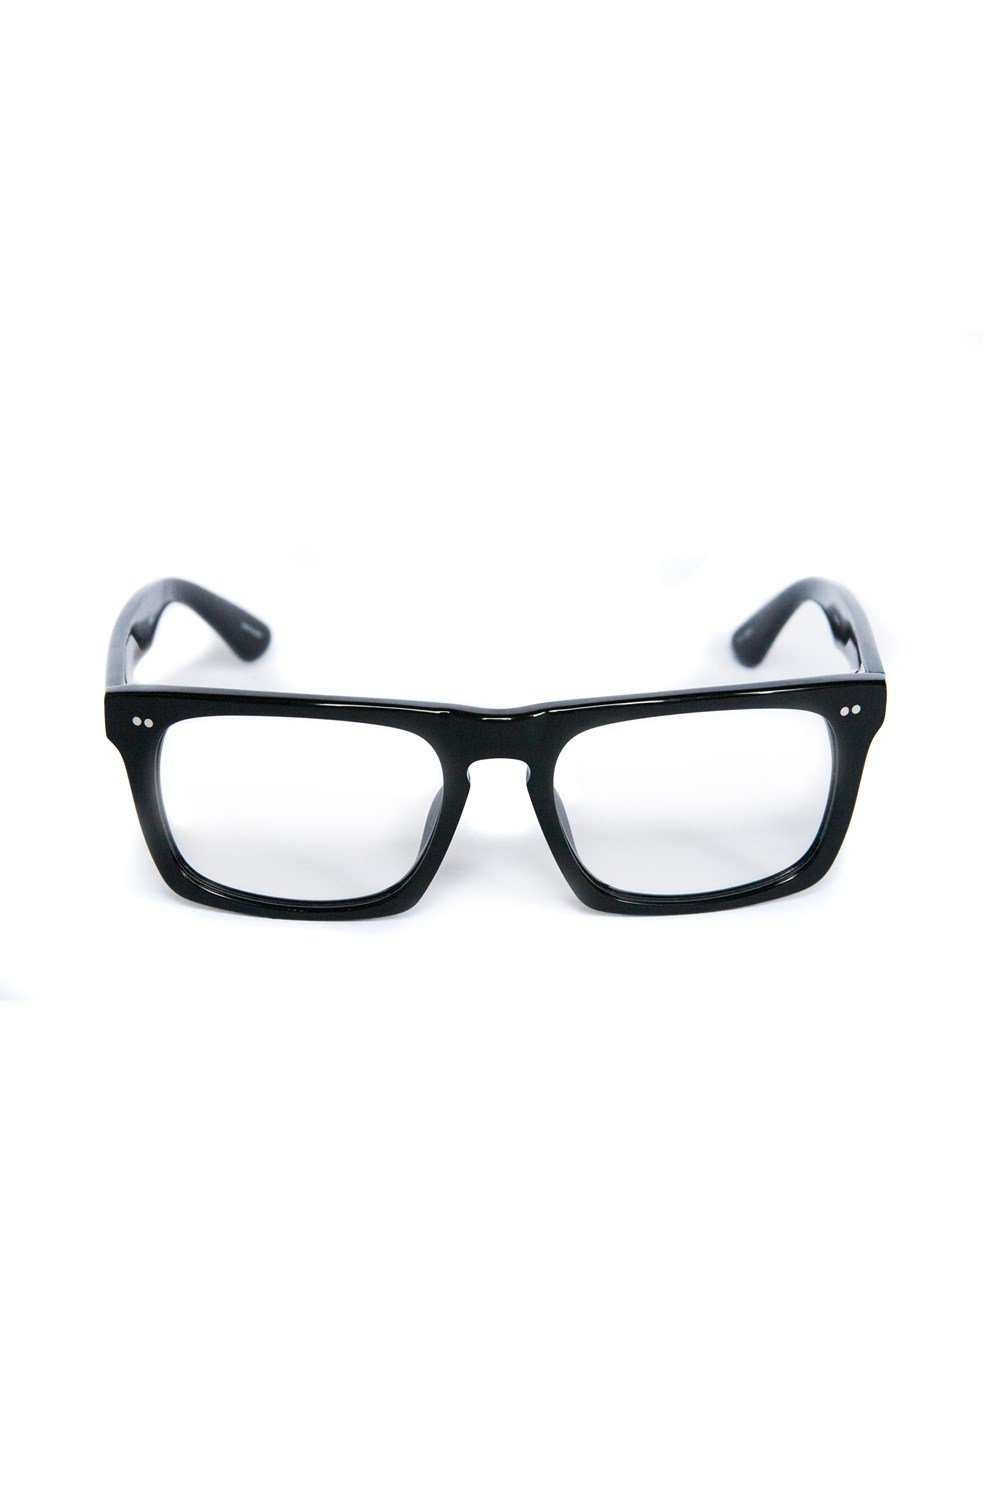 Zambesi Eyewear Optical